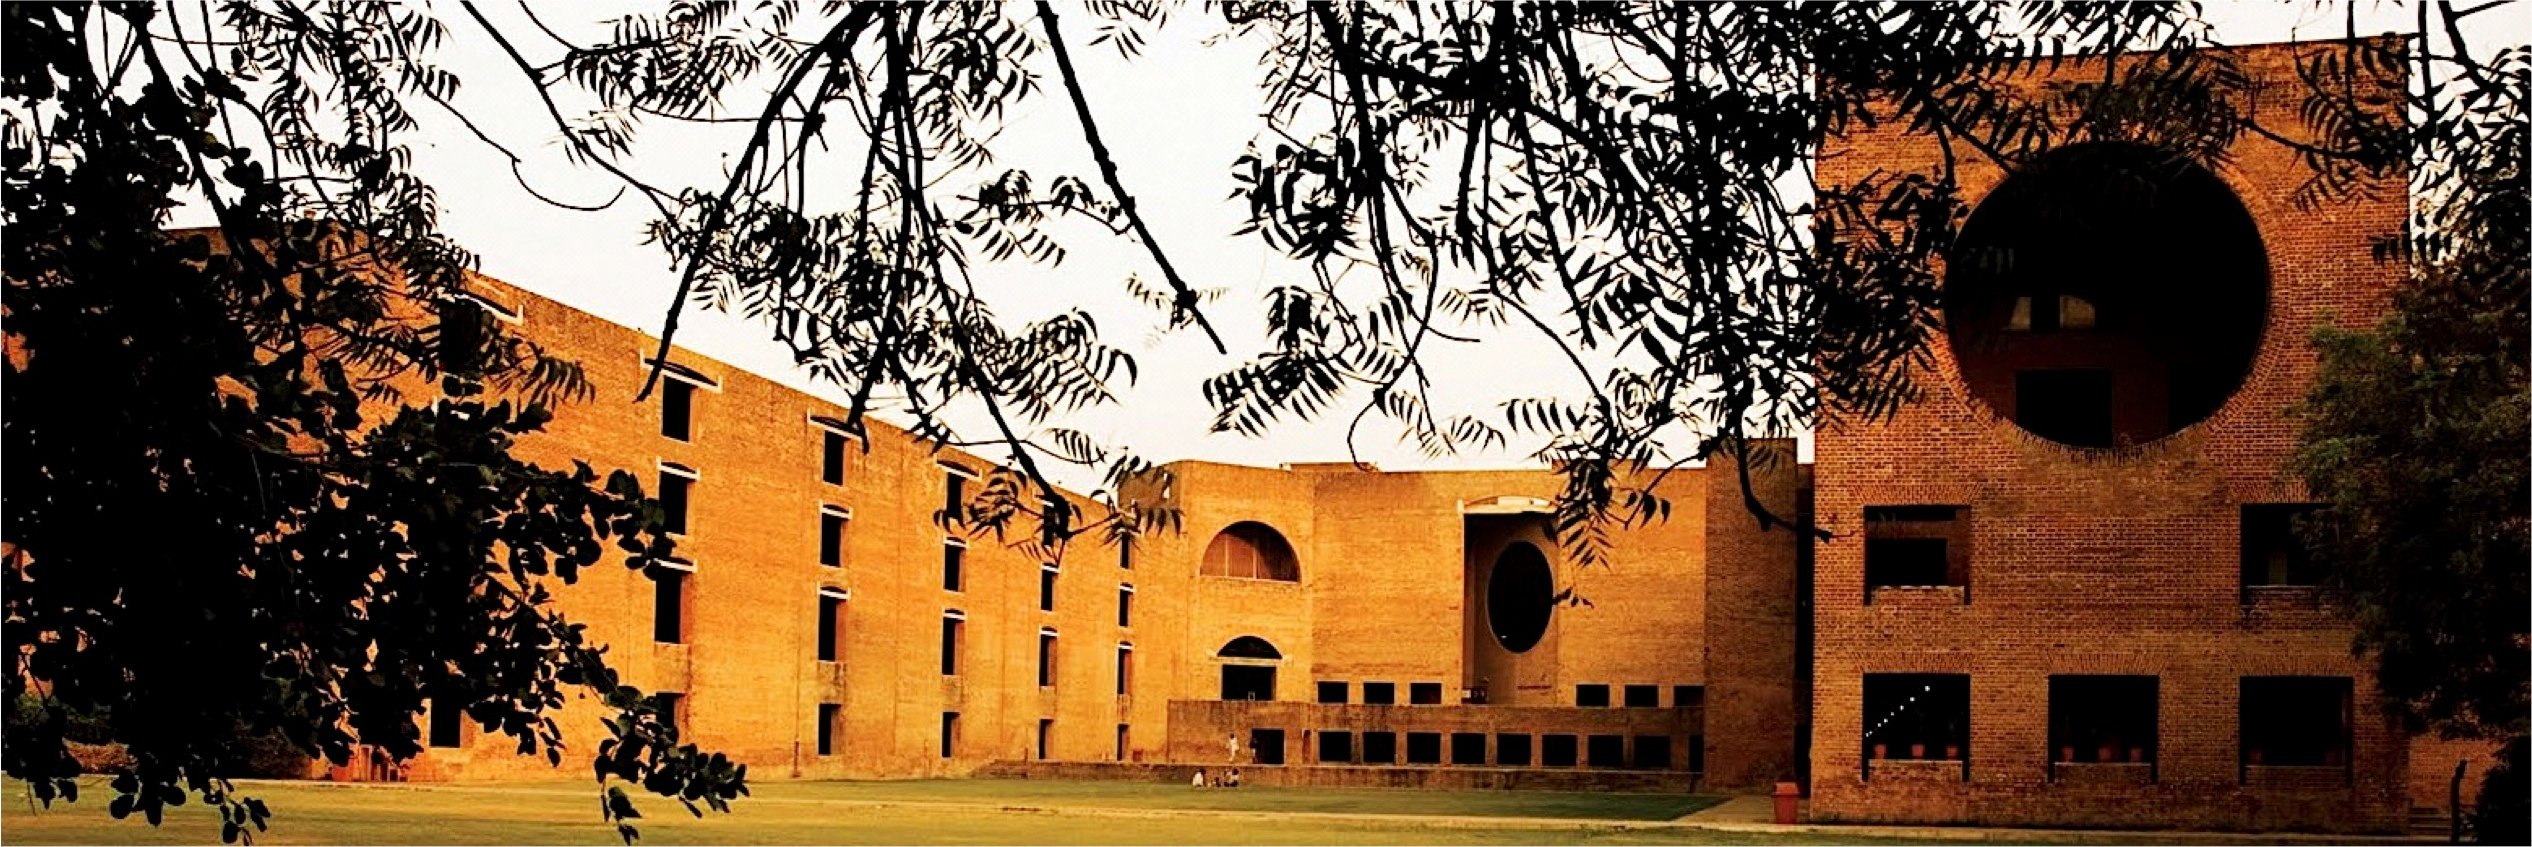 IIM Ahmedabad – Indian Institute of Management